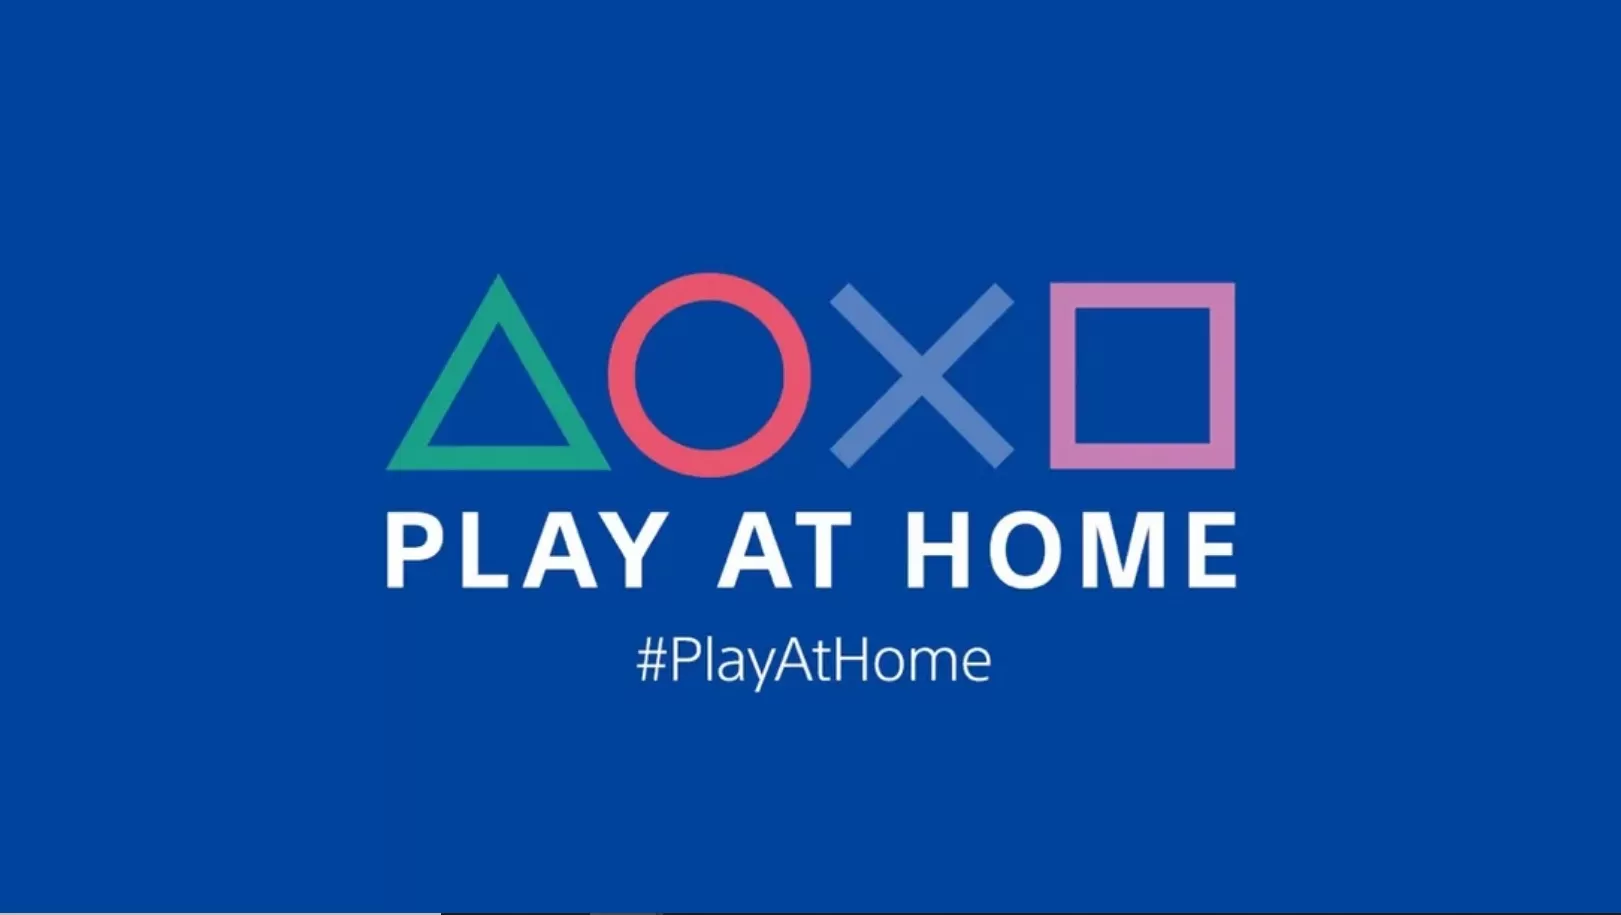 play at home playstation 2021